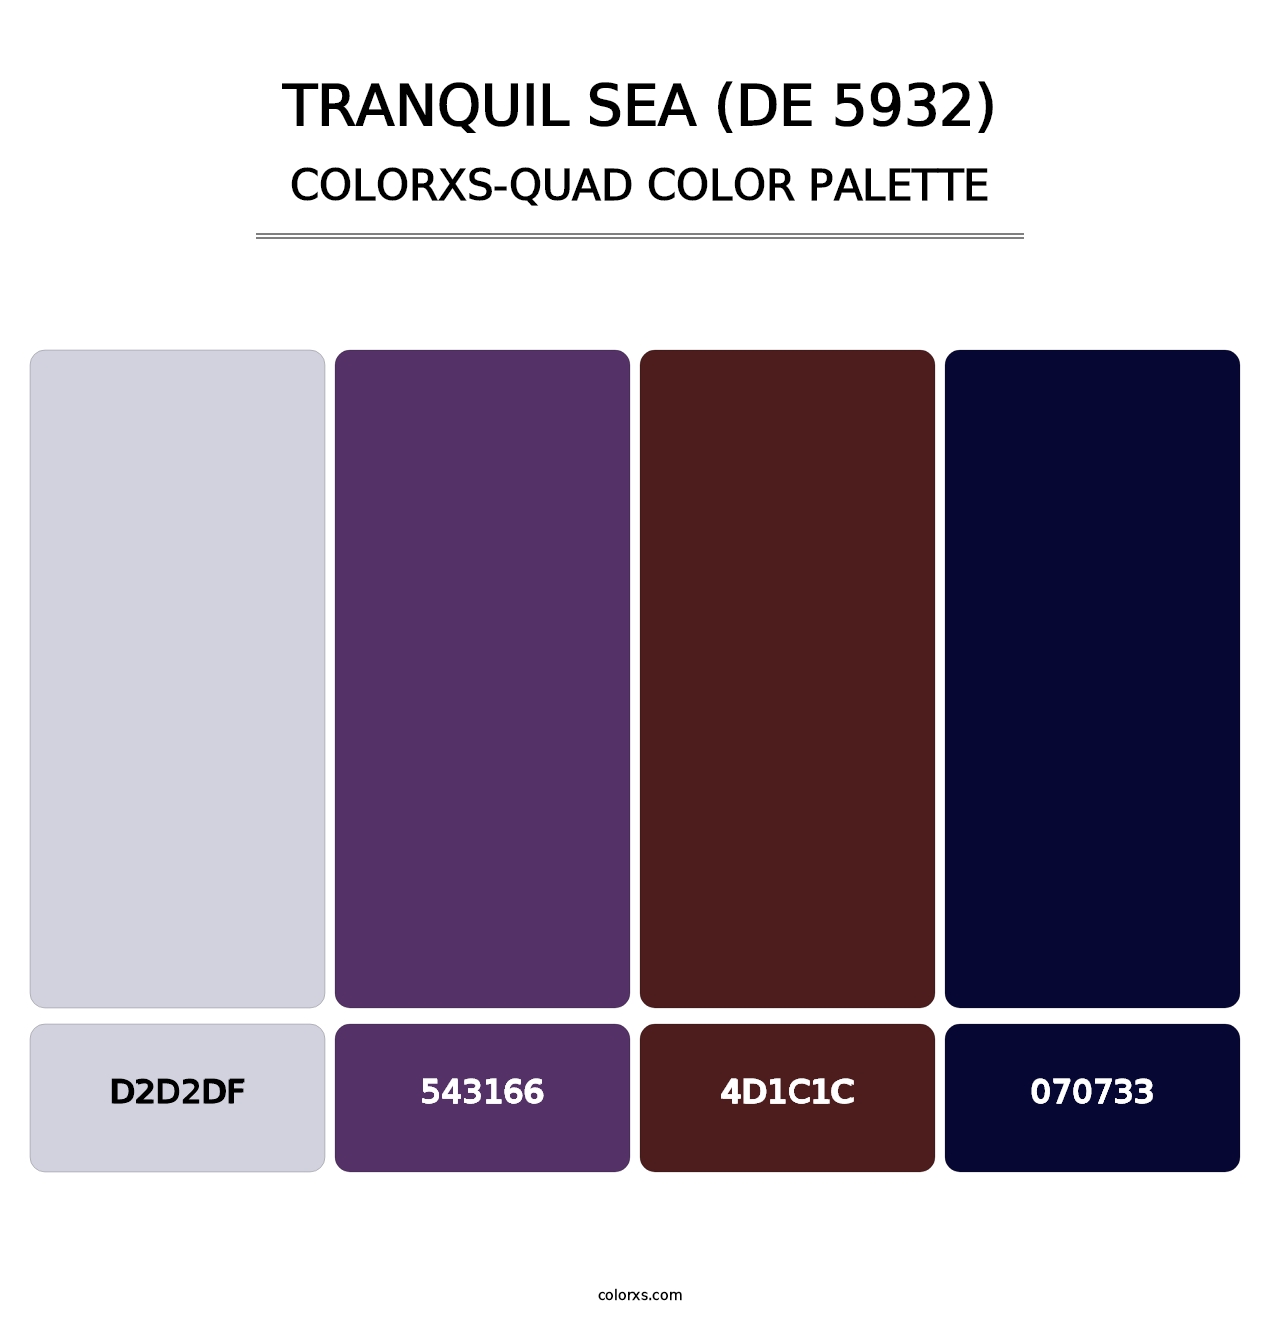 Tranquil Sea (DE 5932) - Colorxs Quad Palette